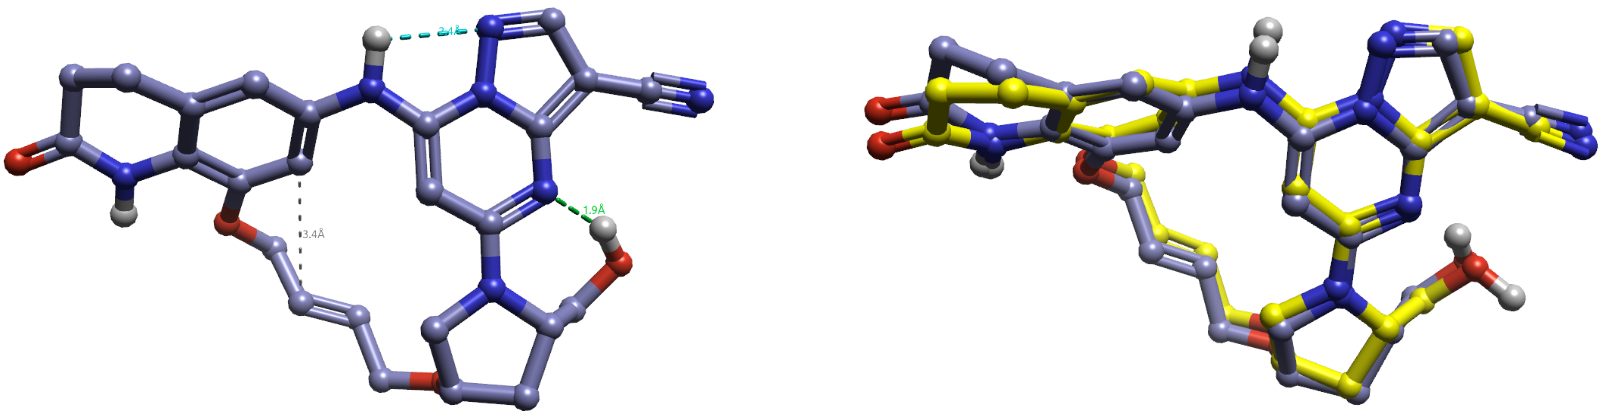 化合物11的最低能构象A（左）及其与生物活性构象的叠合（右）